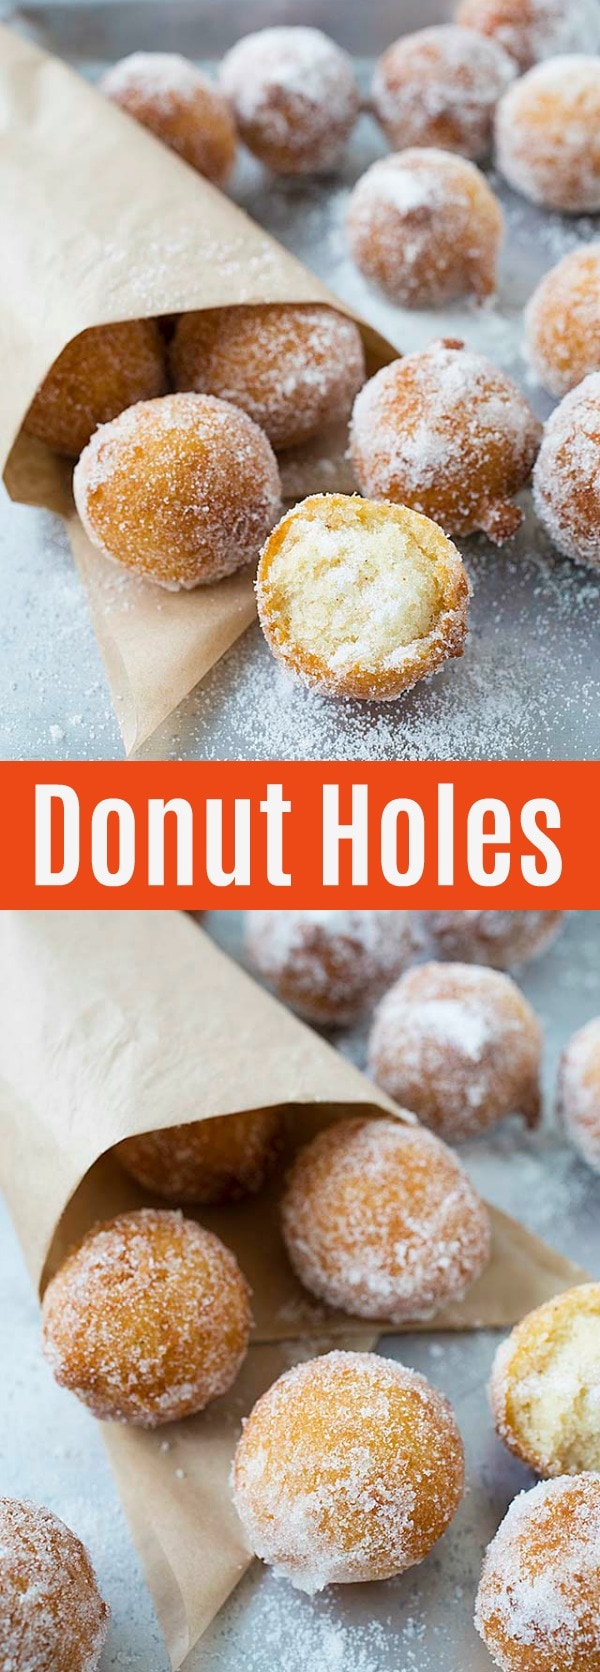 Easy Donut Holes Rasa Malaysia